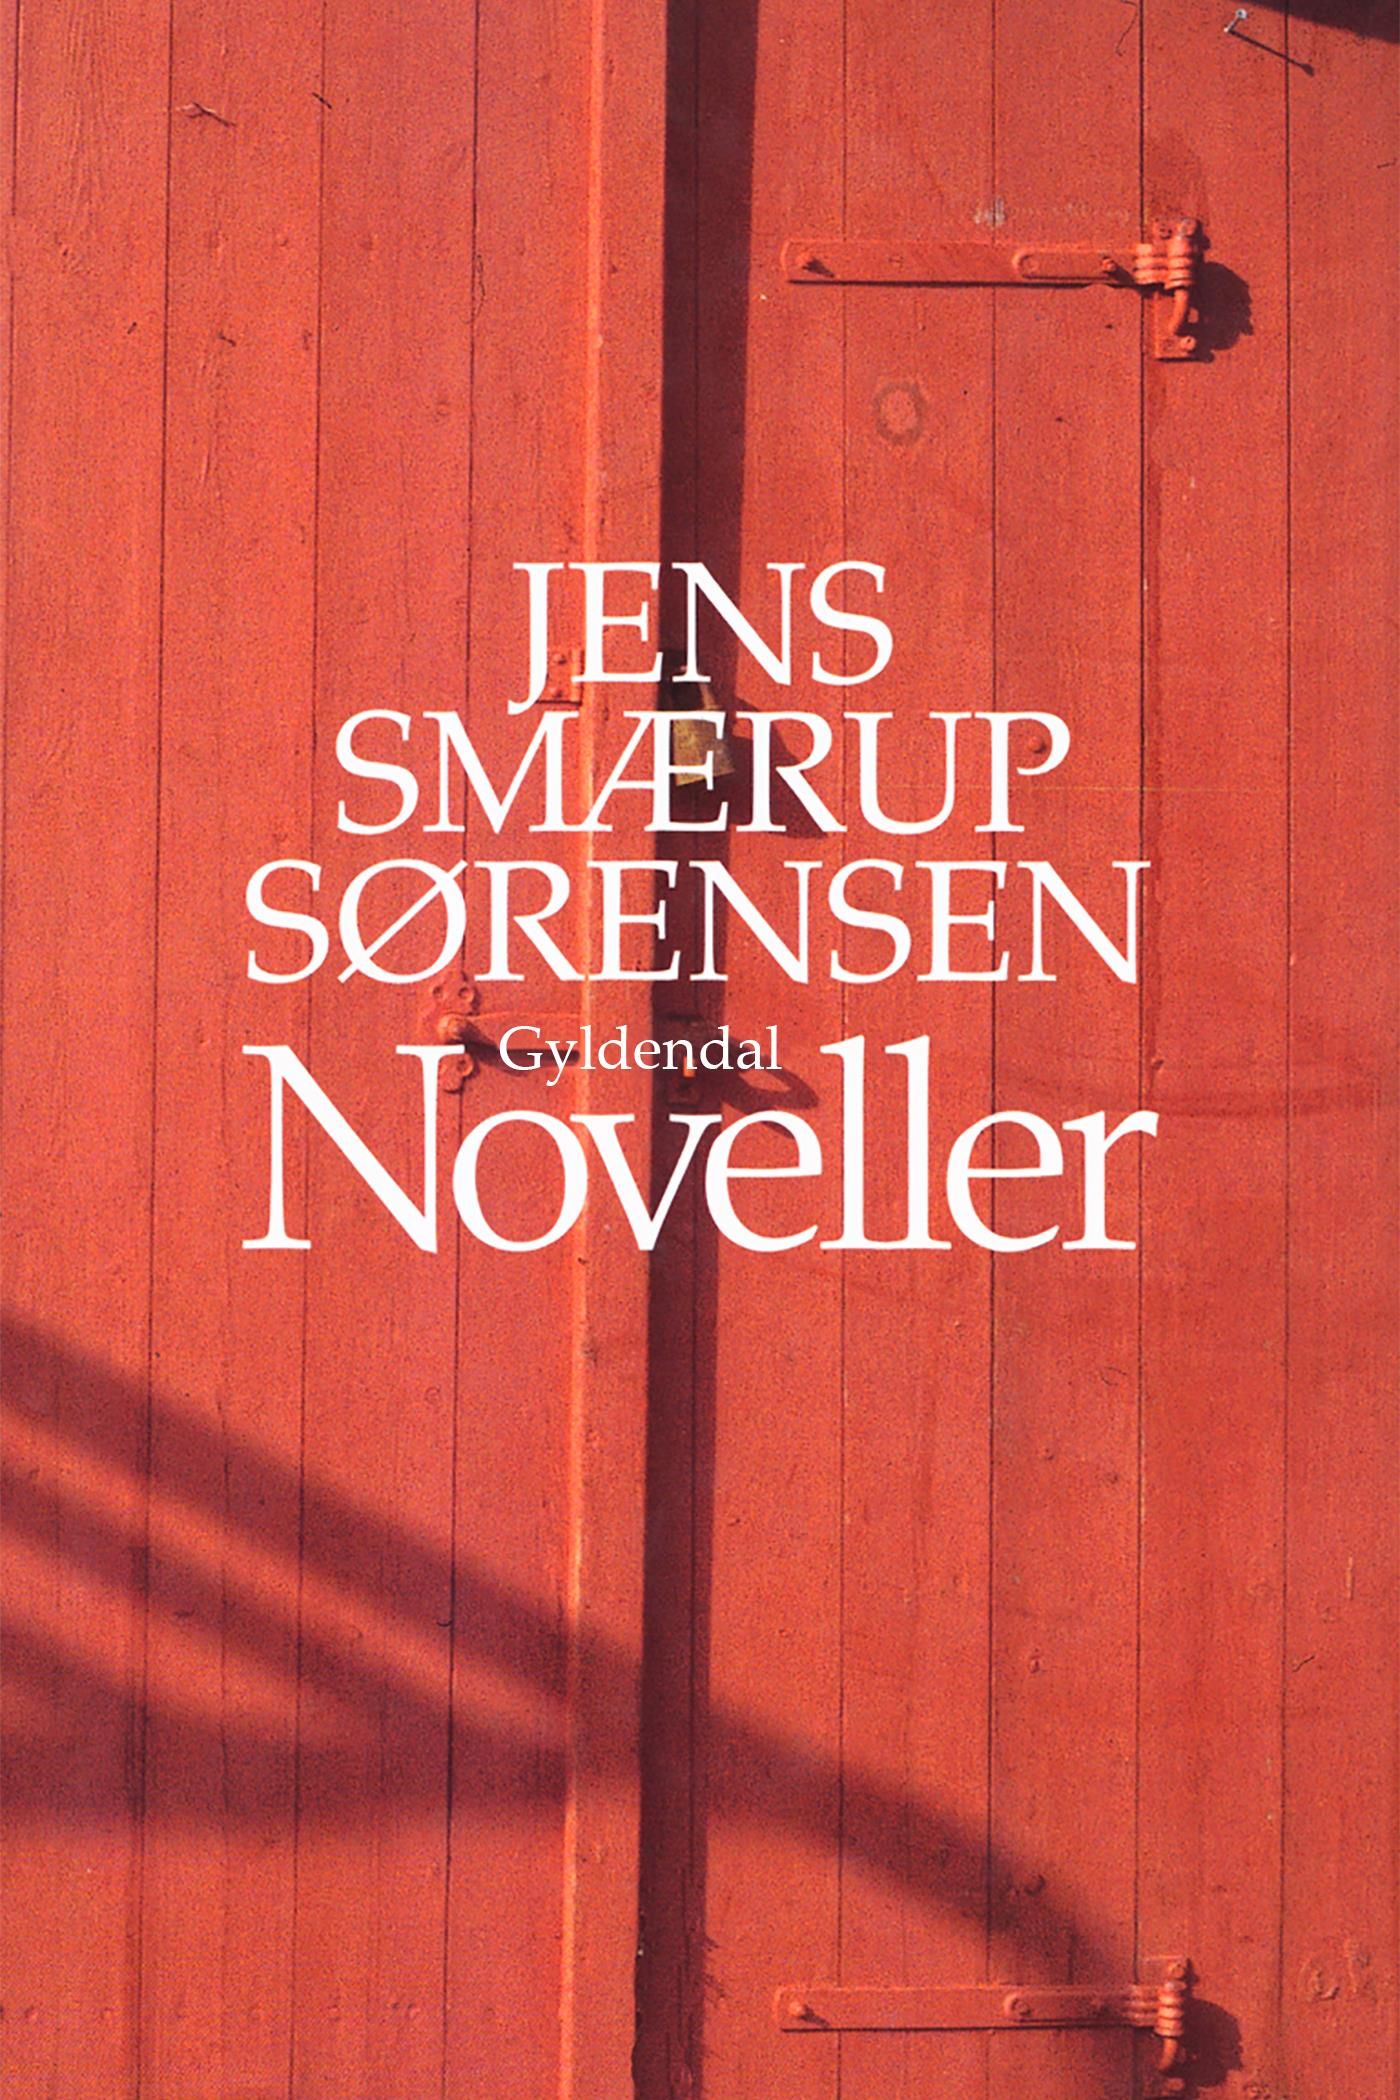 Noveller, e-bog af Jens Smærup Sørensen